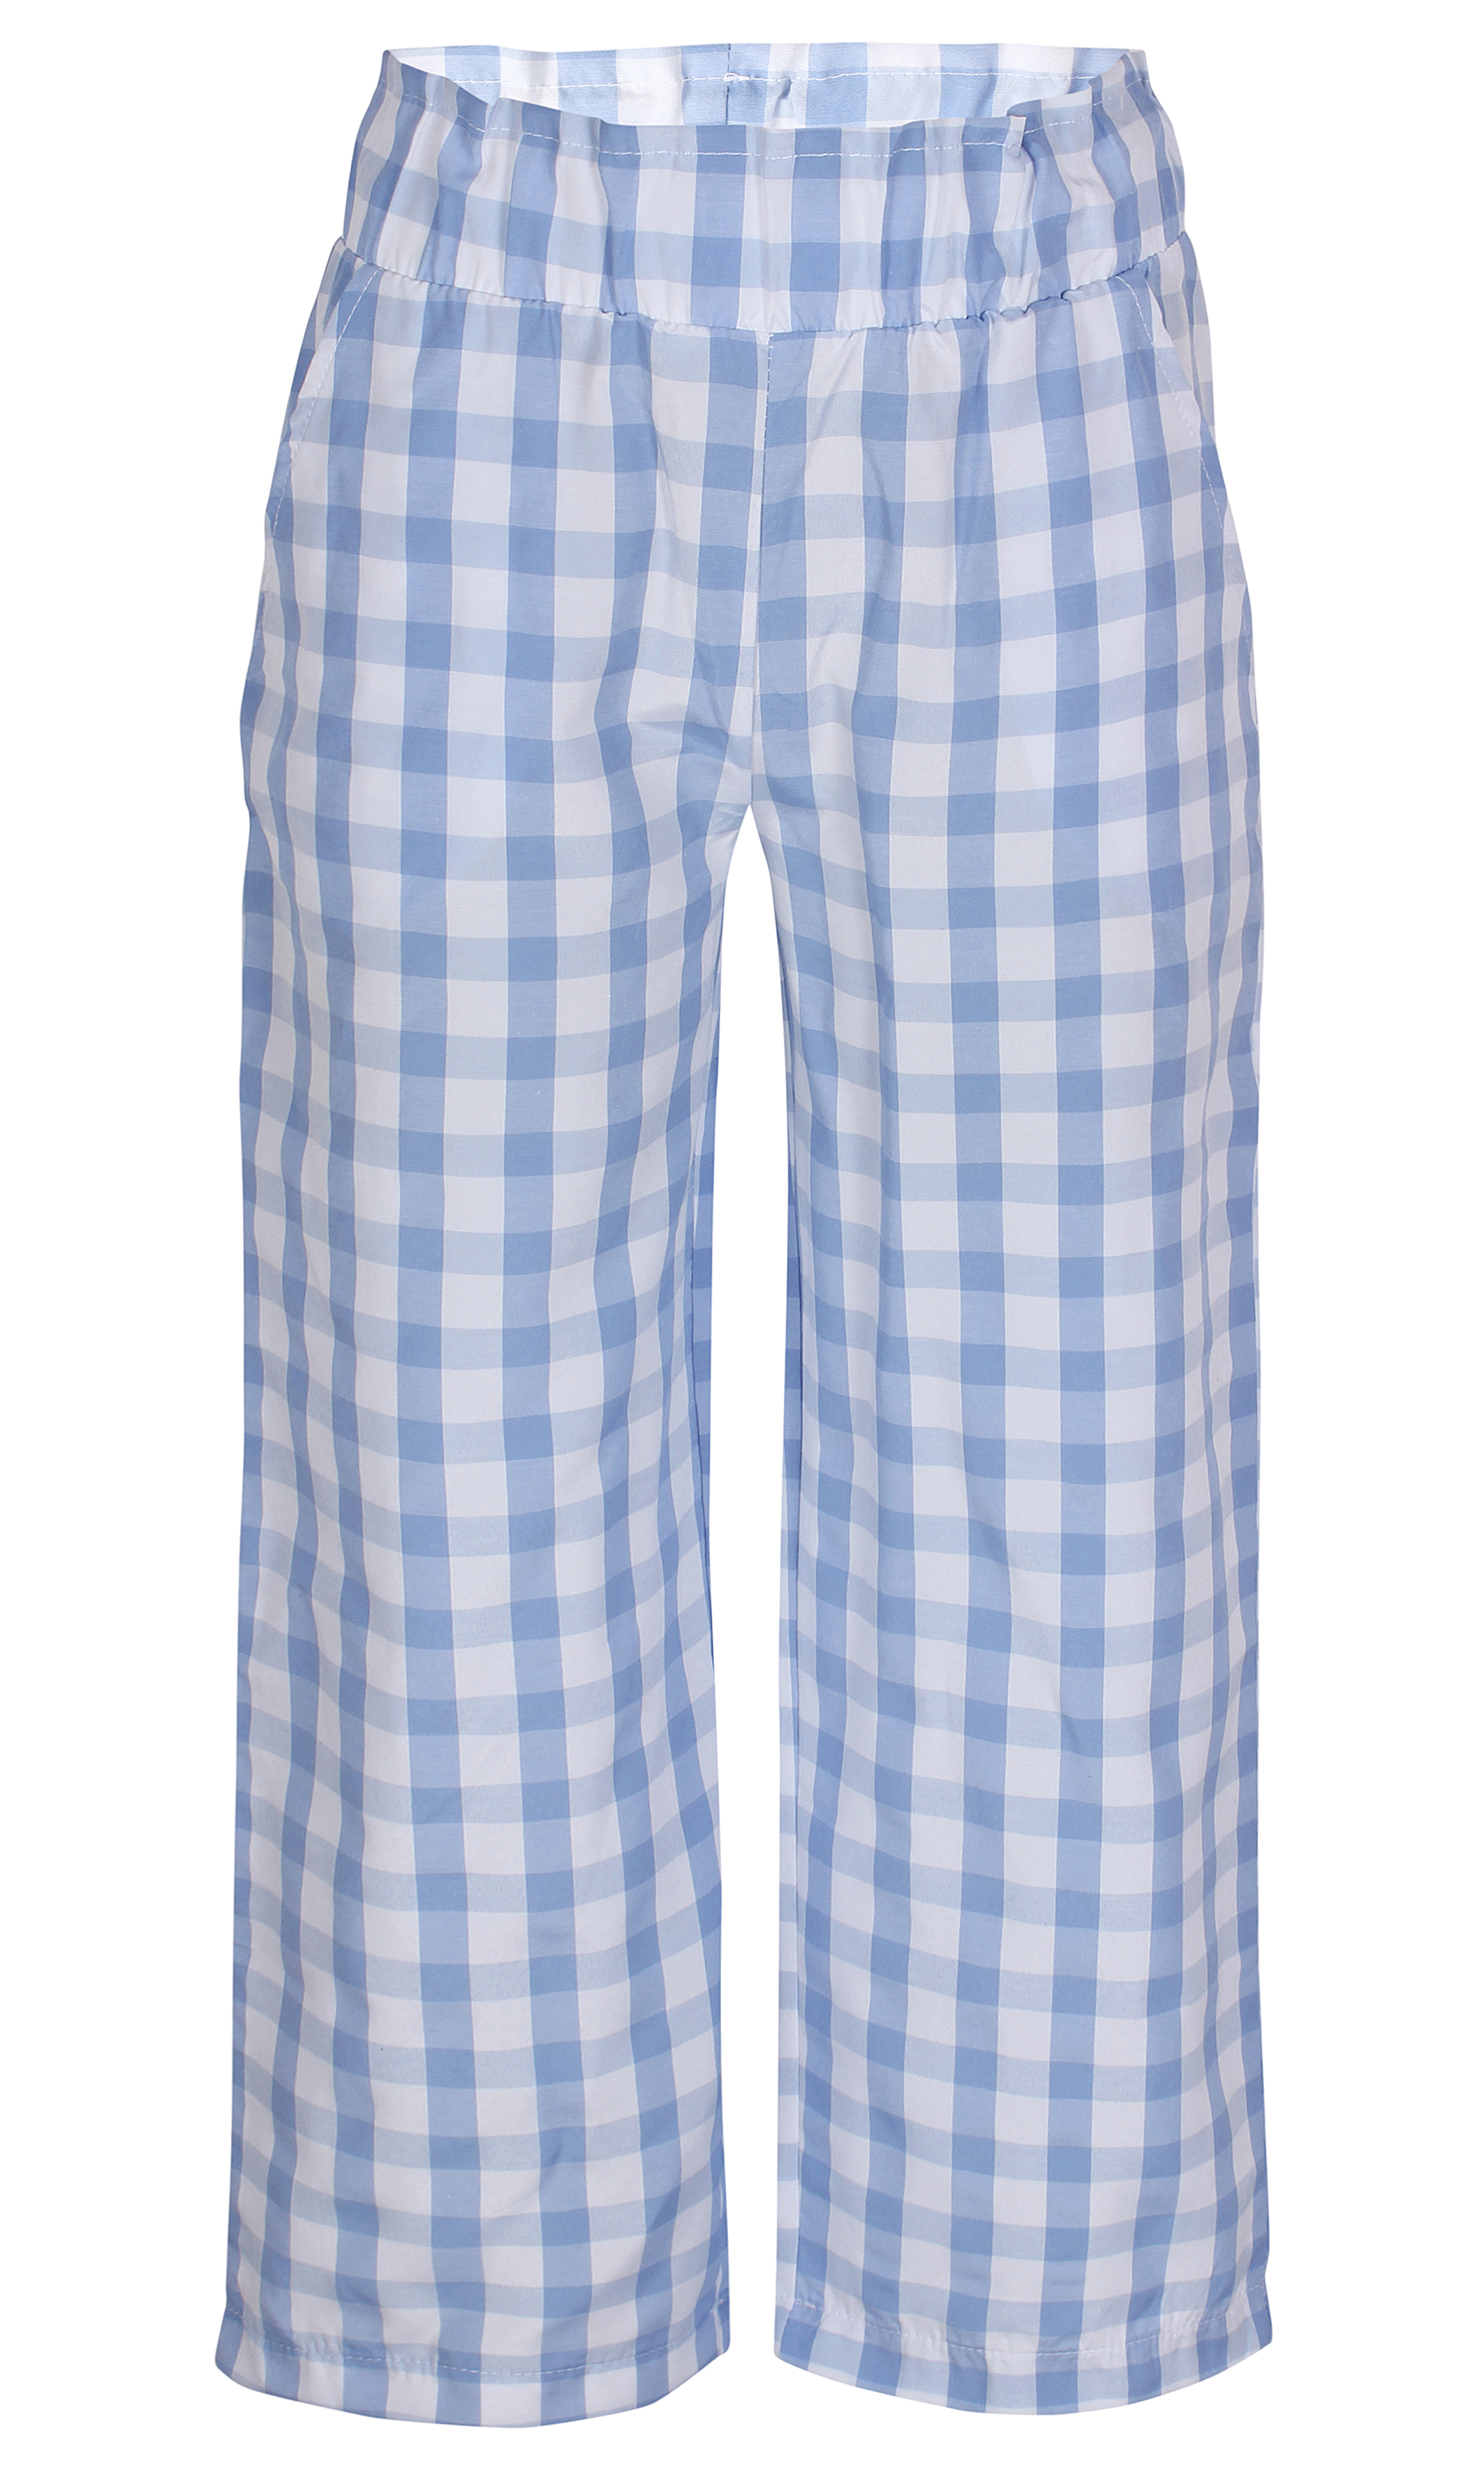 Kids Up - Søde bukser - lyseblå-hvid ternet Pammi - Underdele - IsaDisaKids